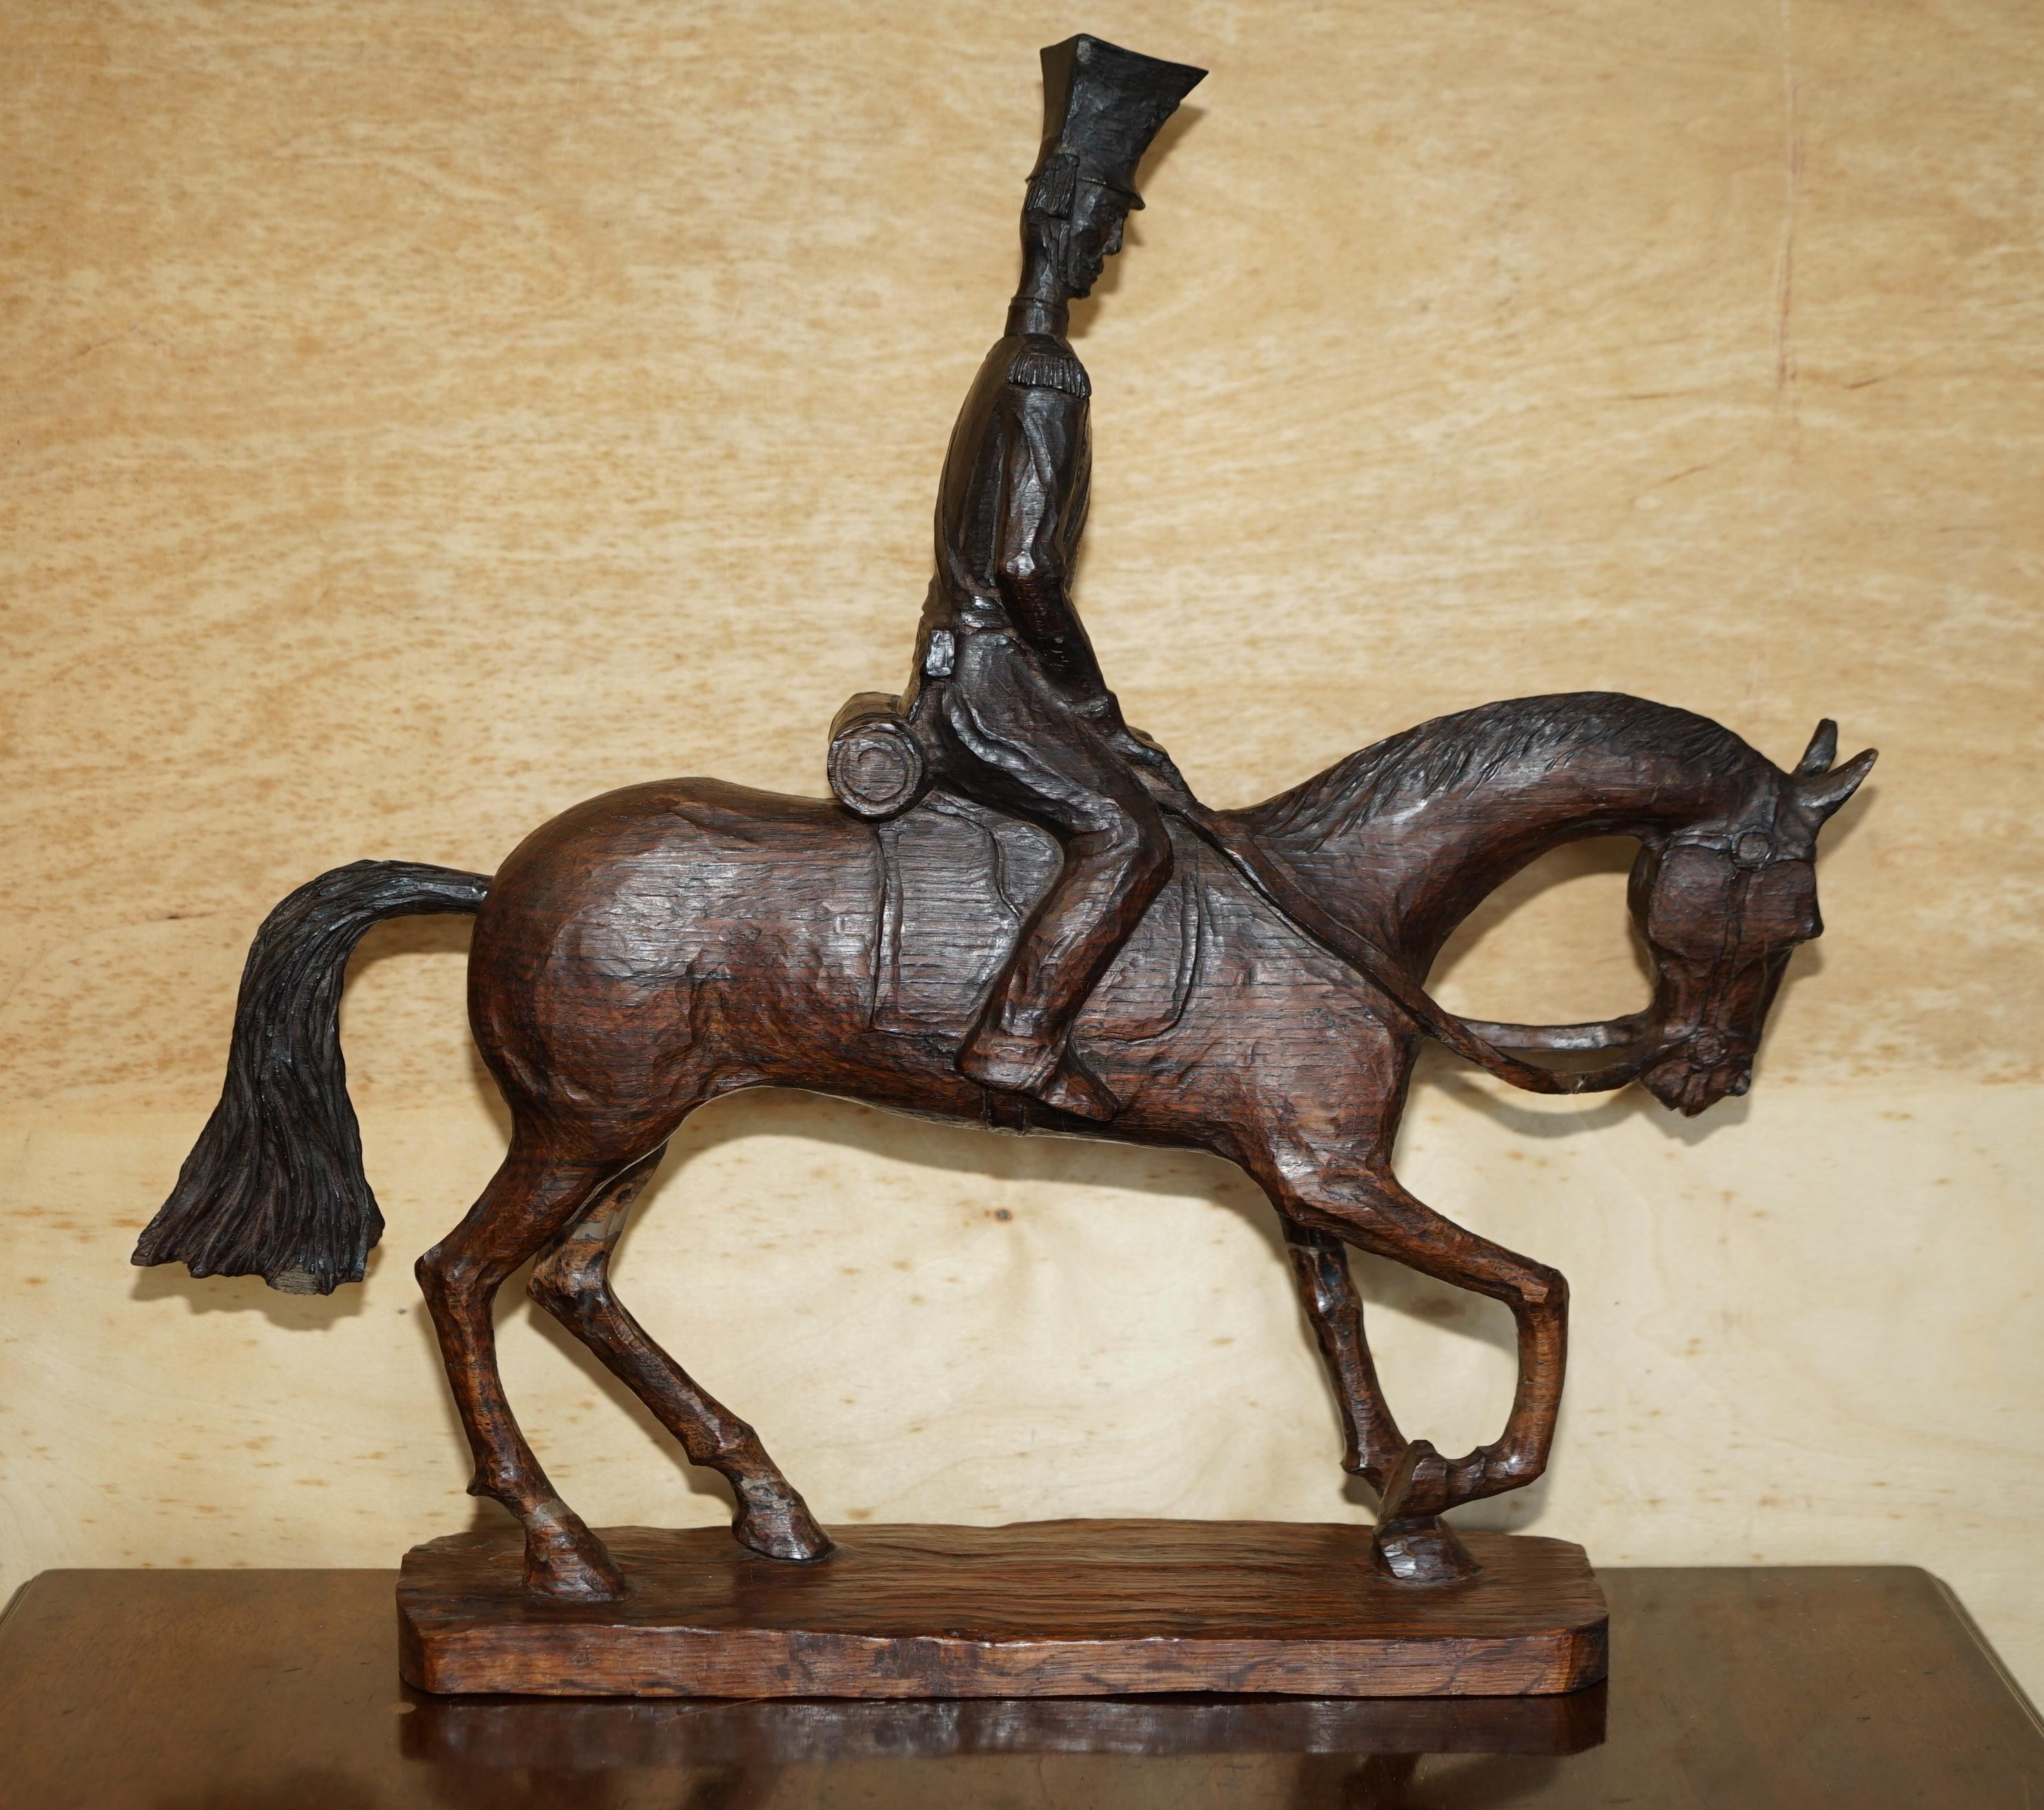 Royal House Antiques

Royal House Antiques freut sich, diese sehr dekorative, handgeschnitzte und signierte Wakmaski-Statue eines Pferdes mit Kalvarienberg-Reiter zum Verkauf anzubieten 

Bitte beachten Sie die Liefergebühr aufgeführt ist nur ein